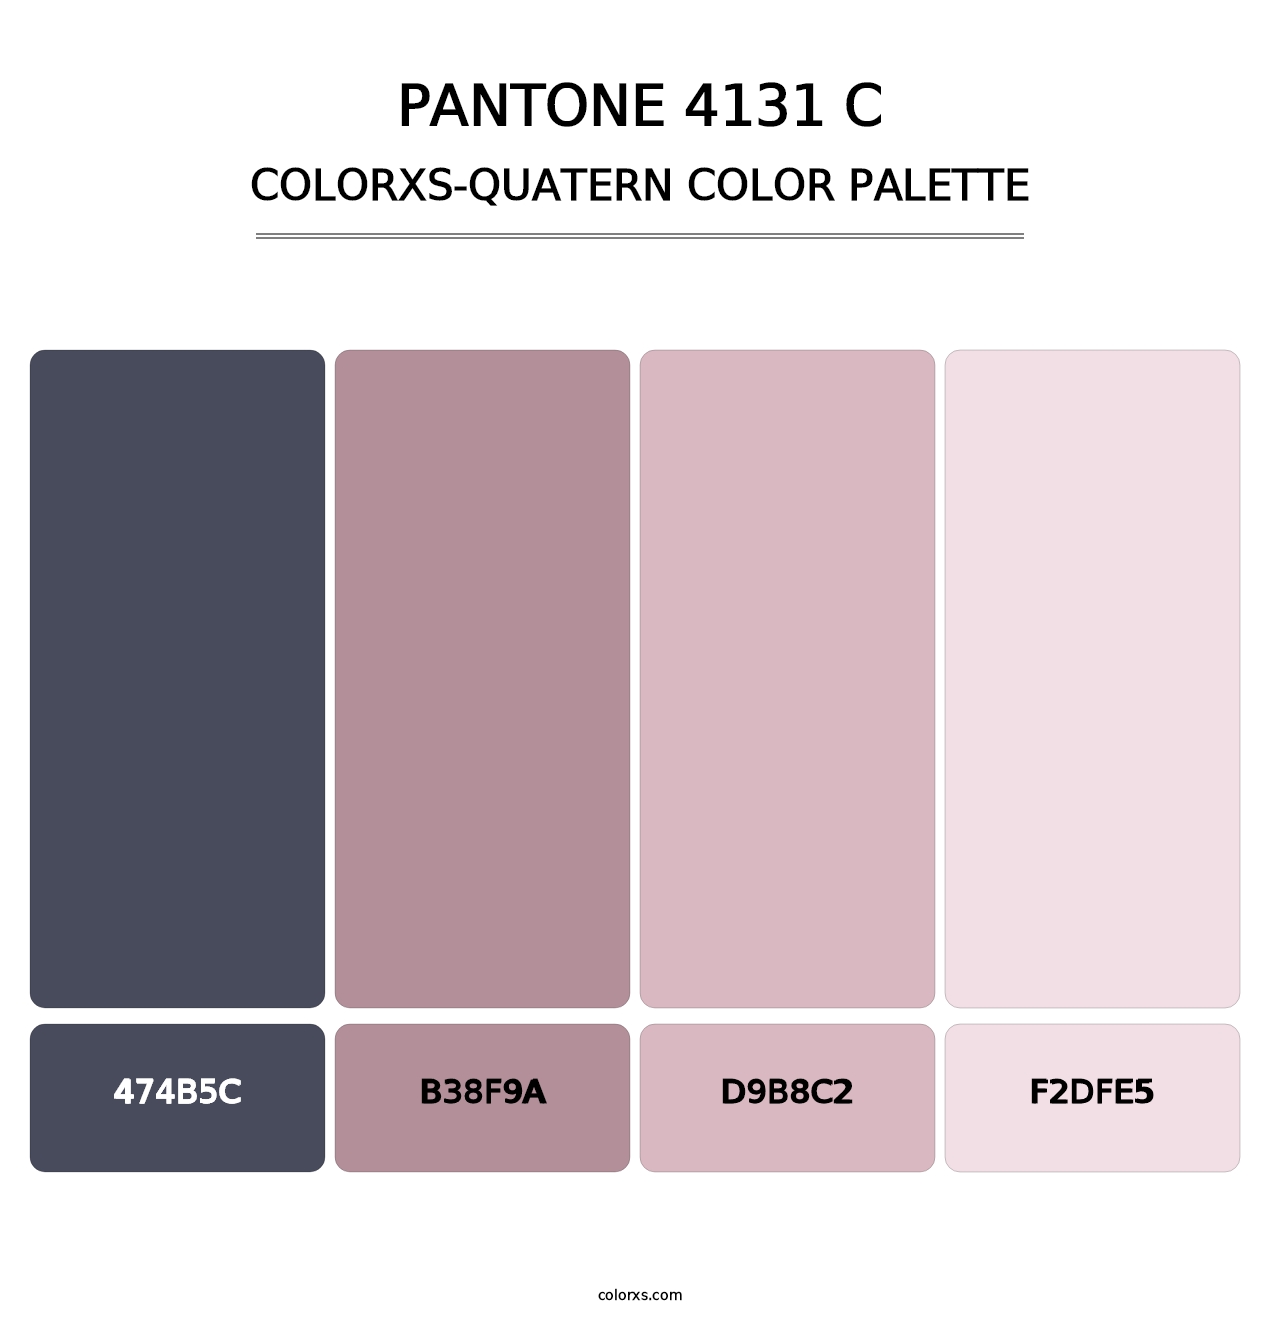 PANTONE 4131 C - Colorxs Quatern Palette